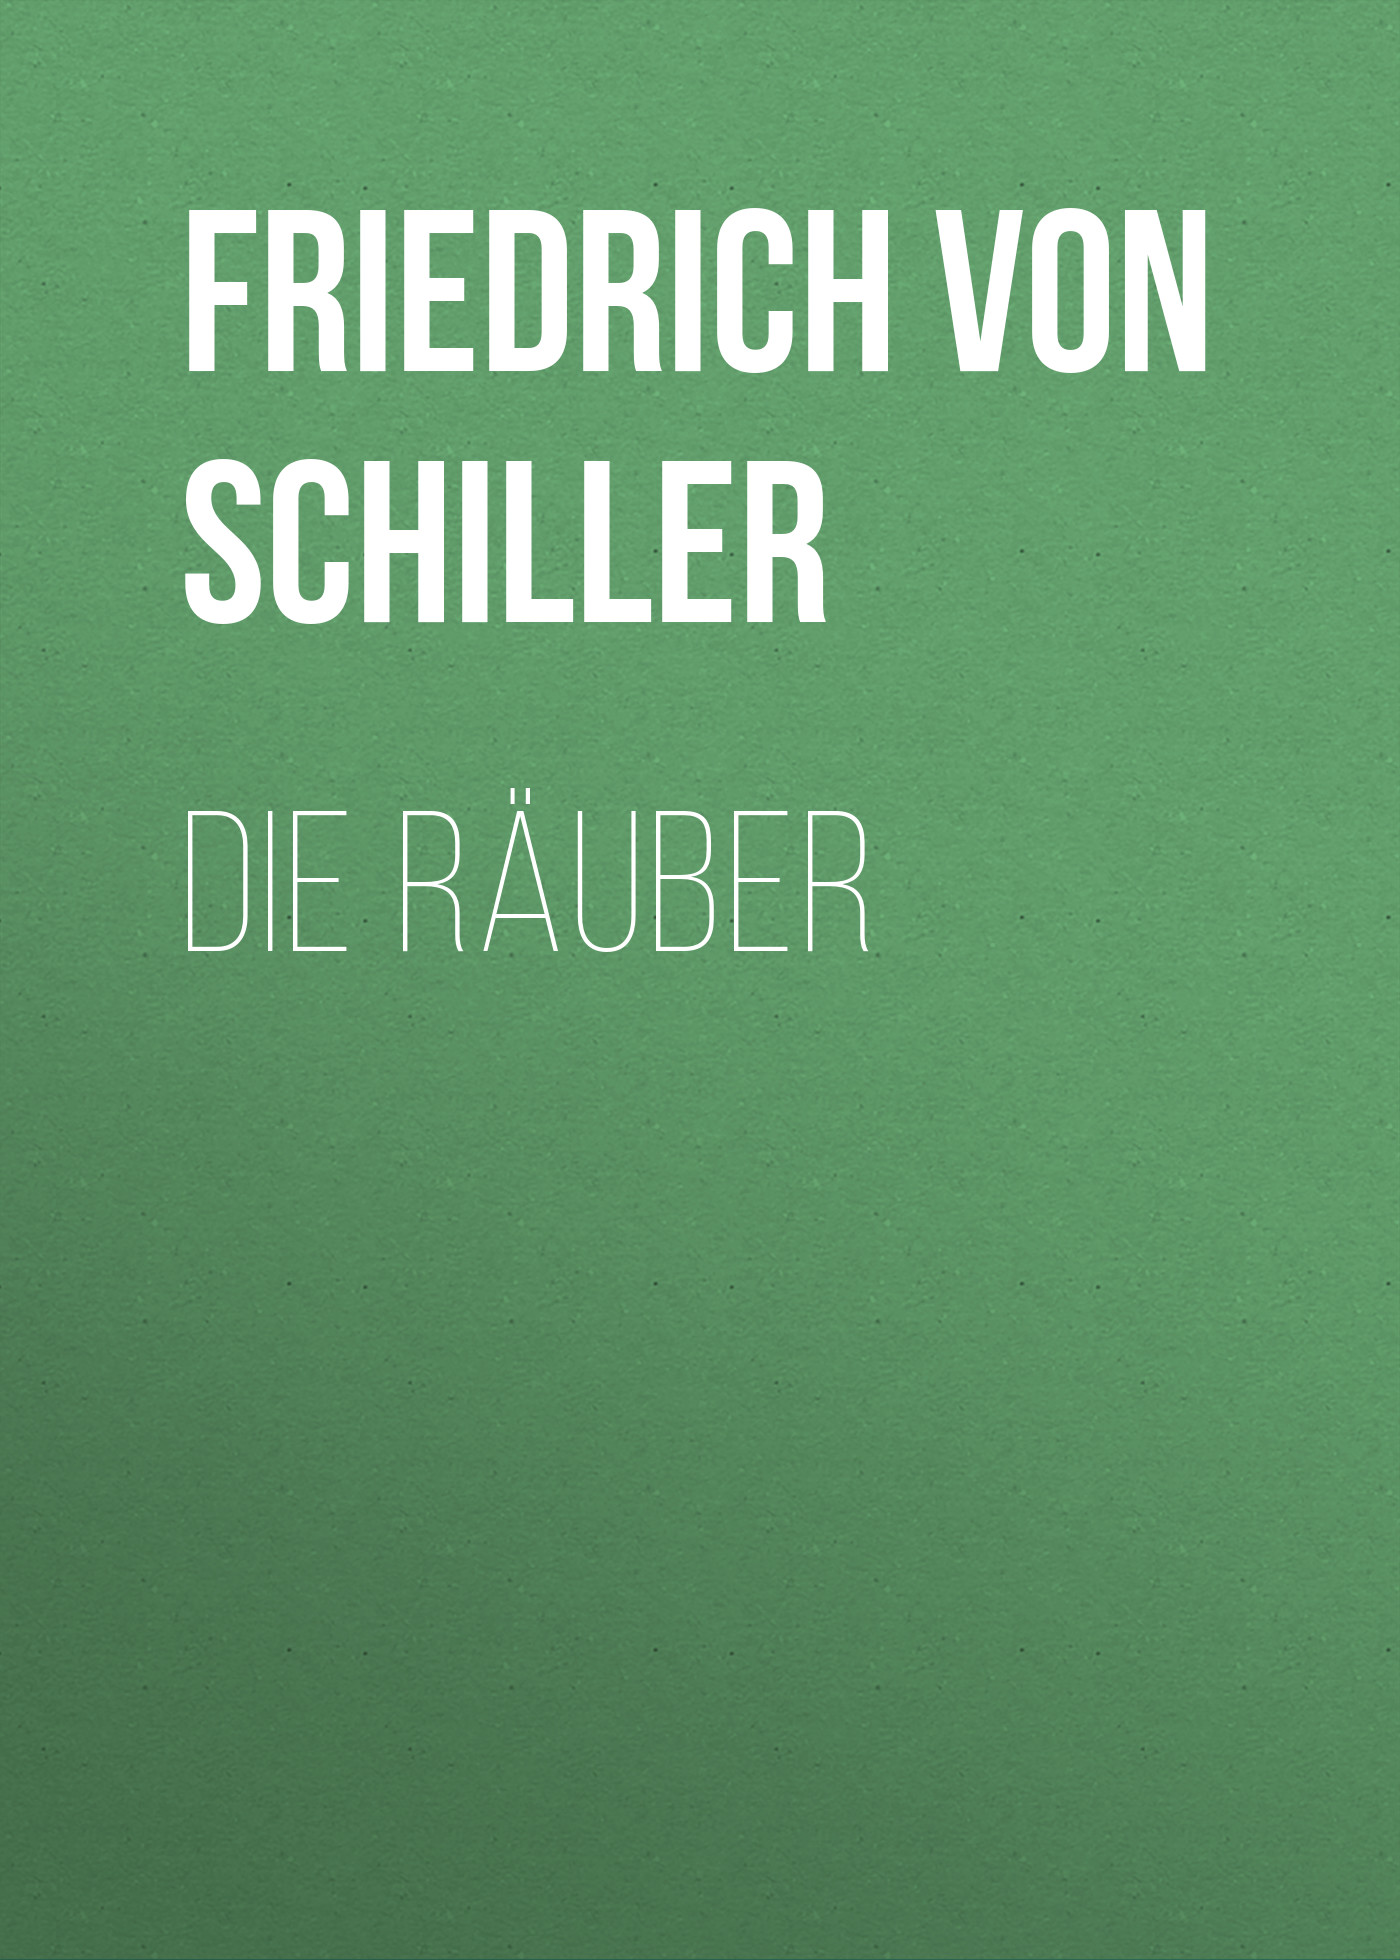 Книга Die Räuber из серии , созданная Friedrich Schiller, может относится к жанру Литература 18 века, Зарубежная старинная литература, Зарубежная классика. Стоимость электронной книги Die Räuber с идентификатором 25449676 составляет 0 руб.